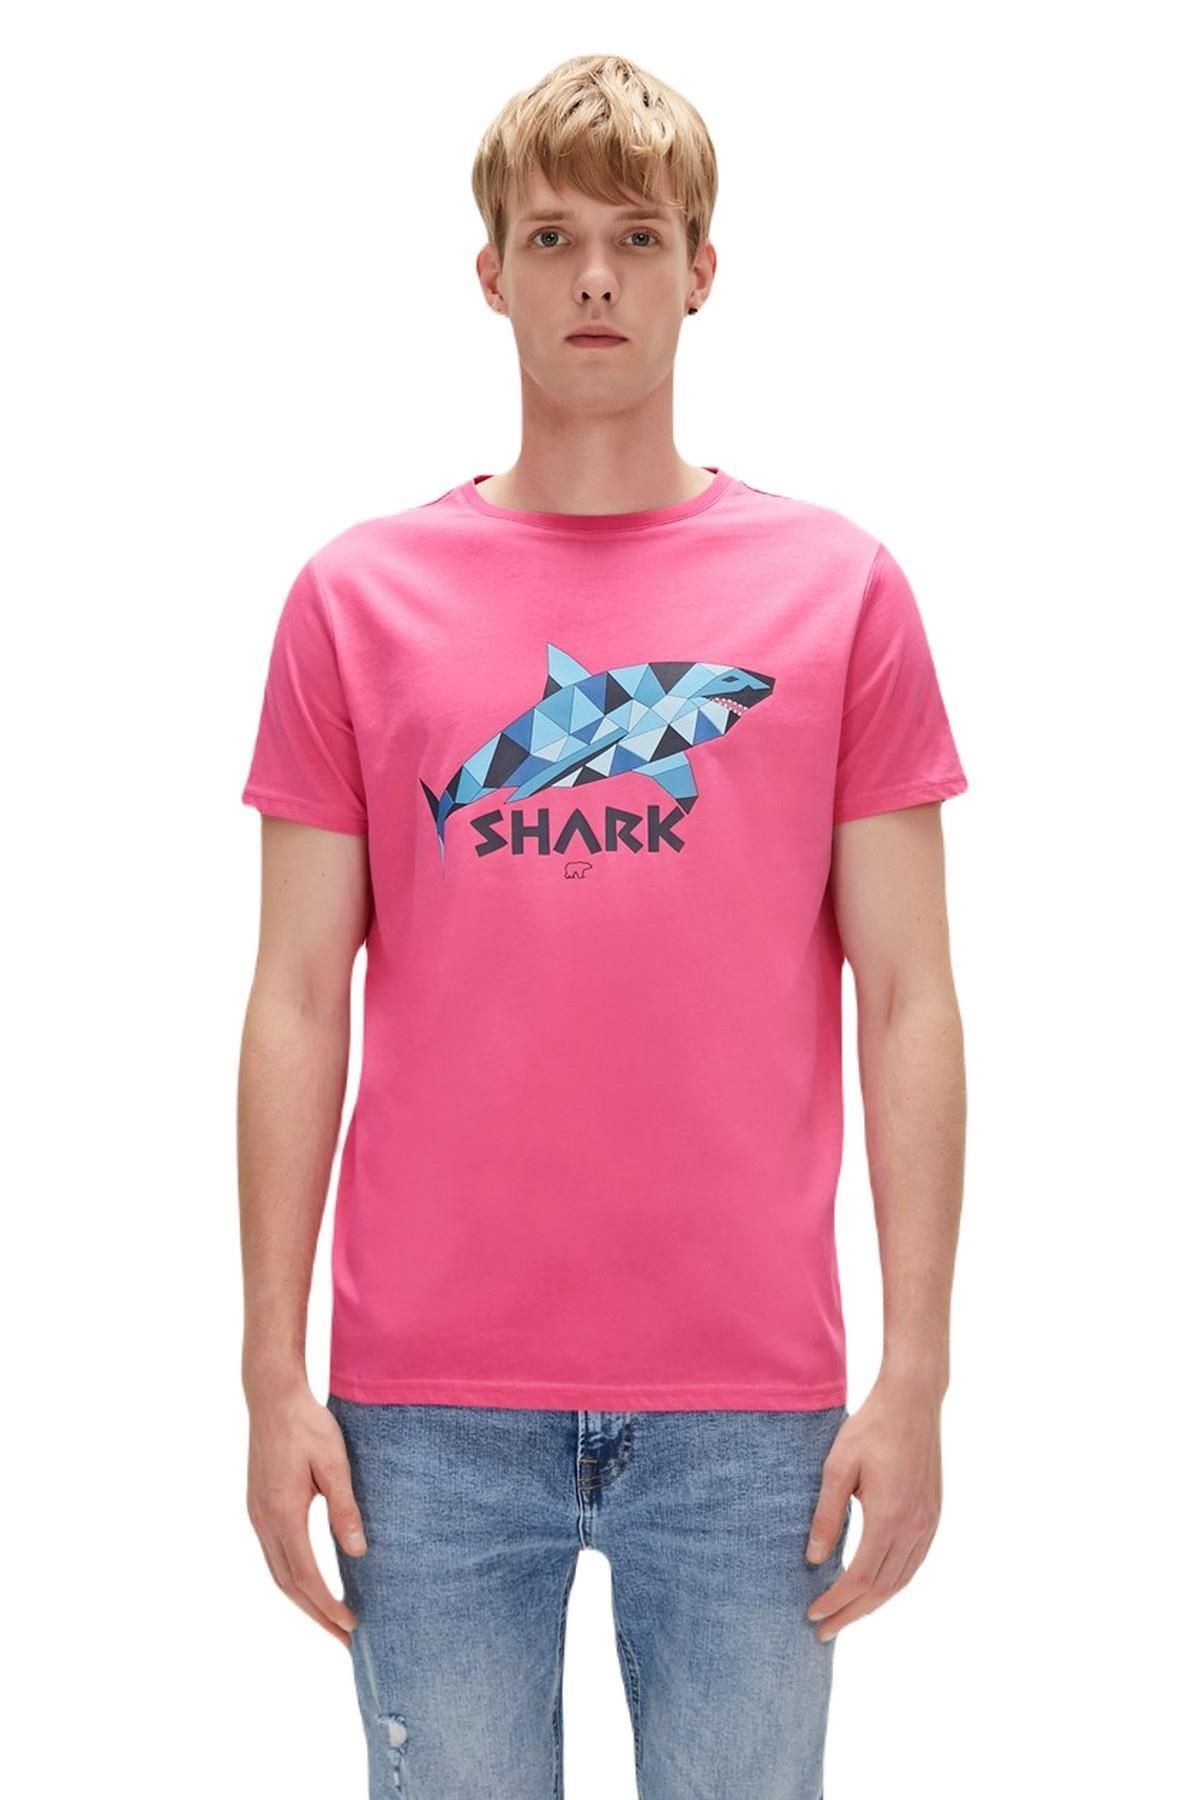 Bad Bear 23.01.07.024-c124 Shark Erkek T-shirt